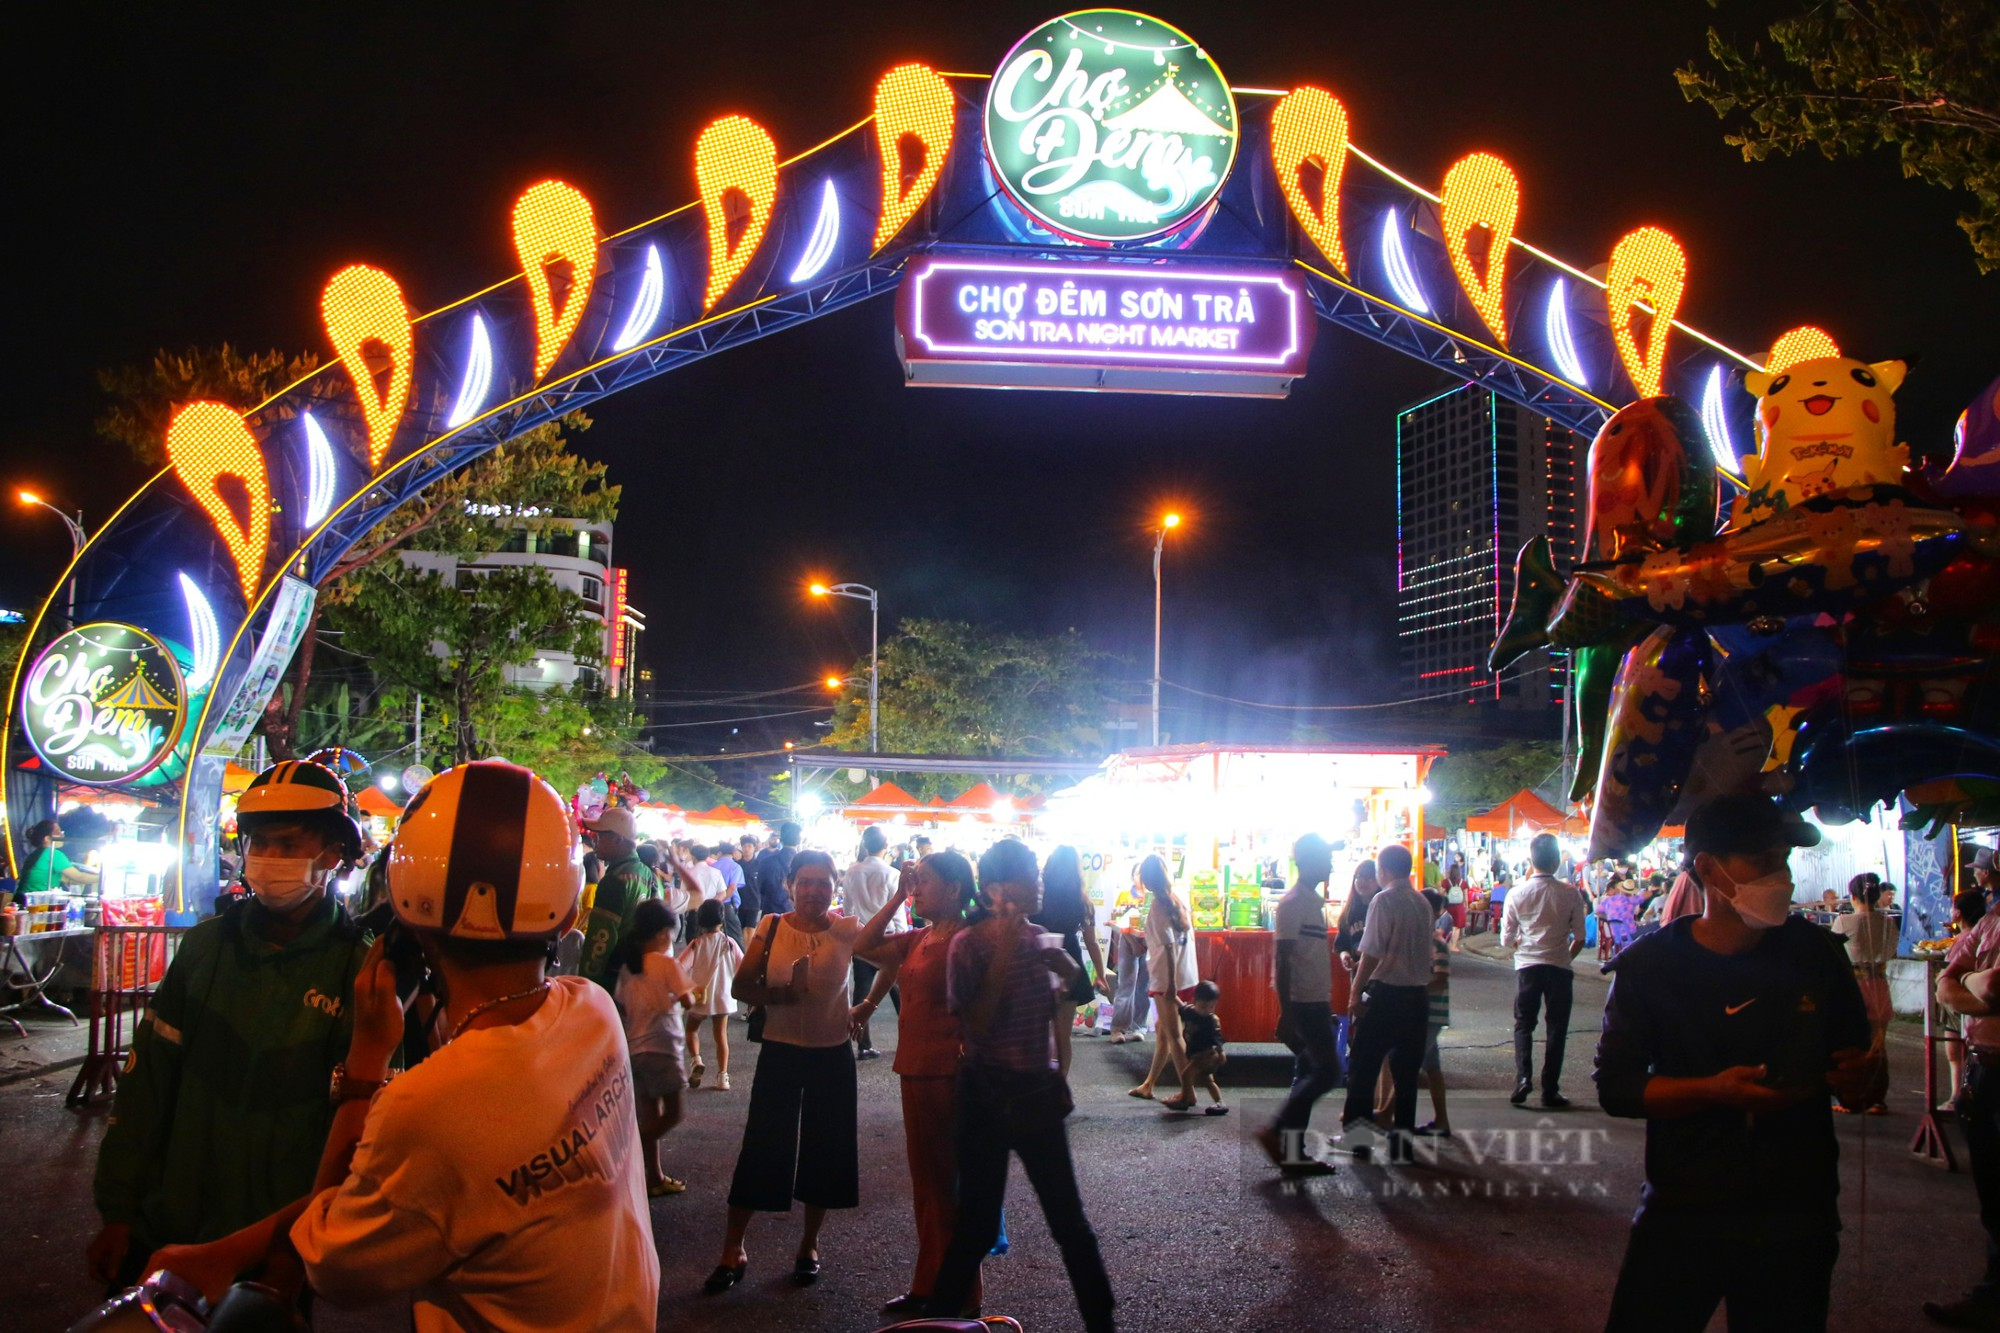 Chợ đêm lớn nhất Đà Nẵng chật kín lối ra vào dịp lễ 30/4 - 1/5 - Ảnh 7.